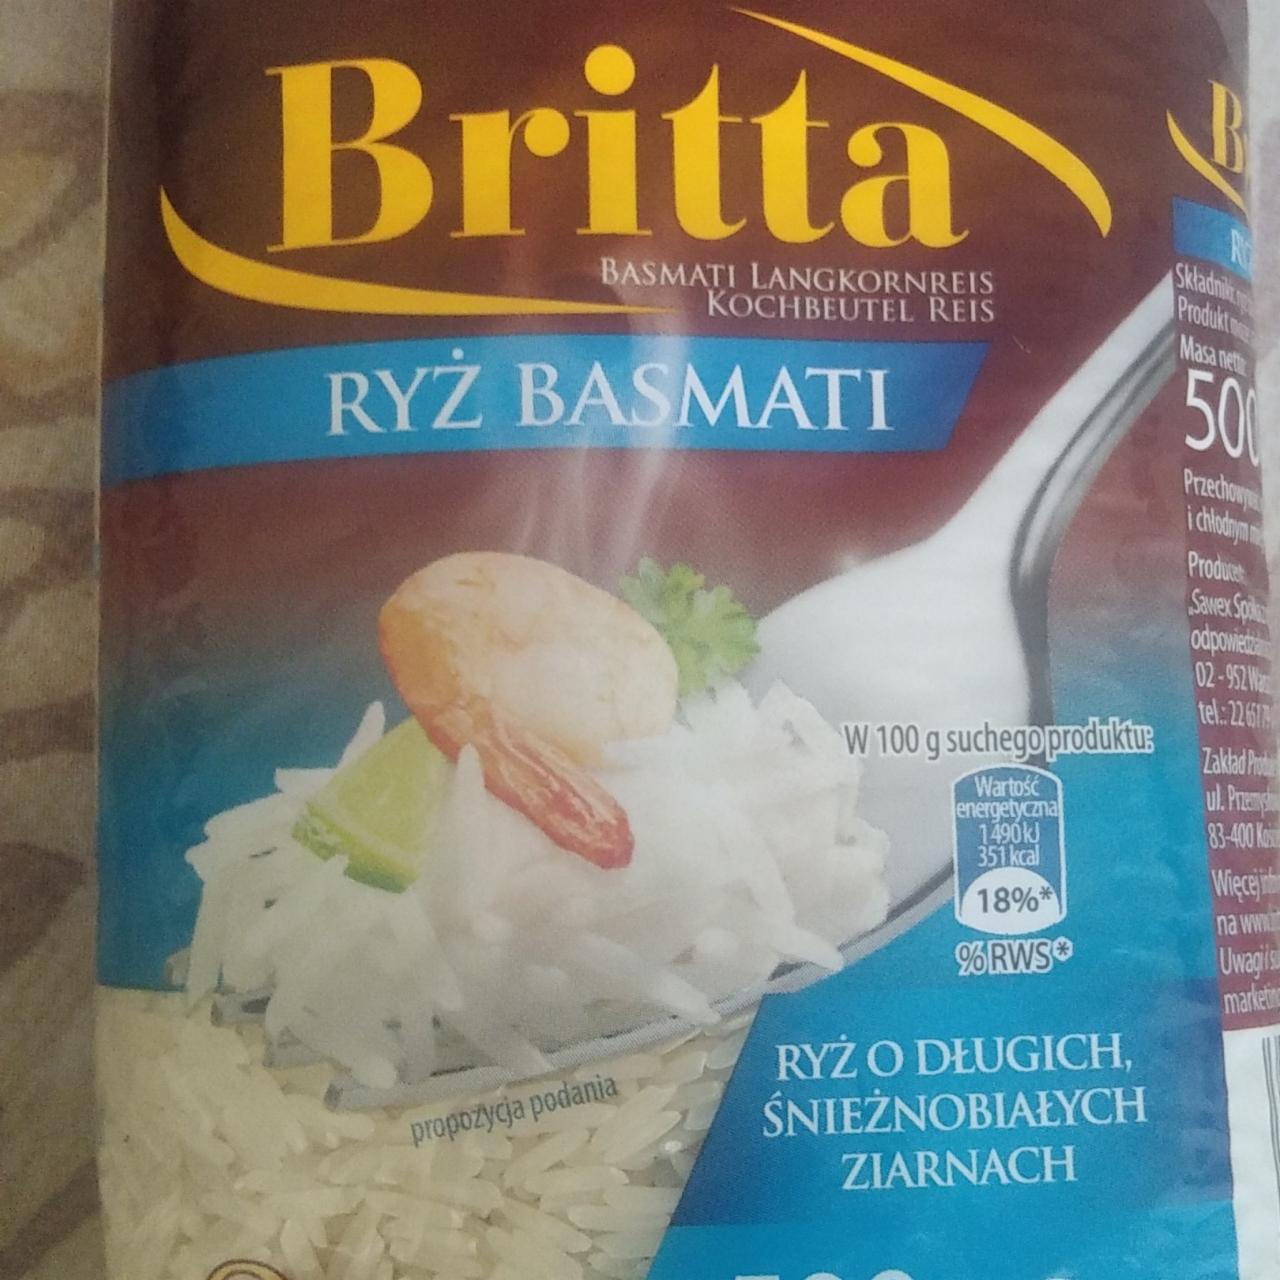 Zdjęcia - Britta ryż basmati